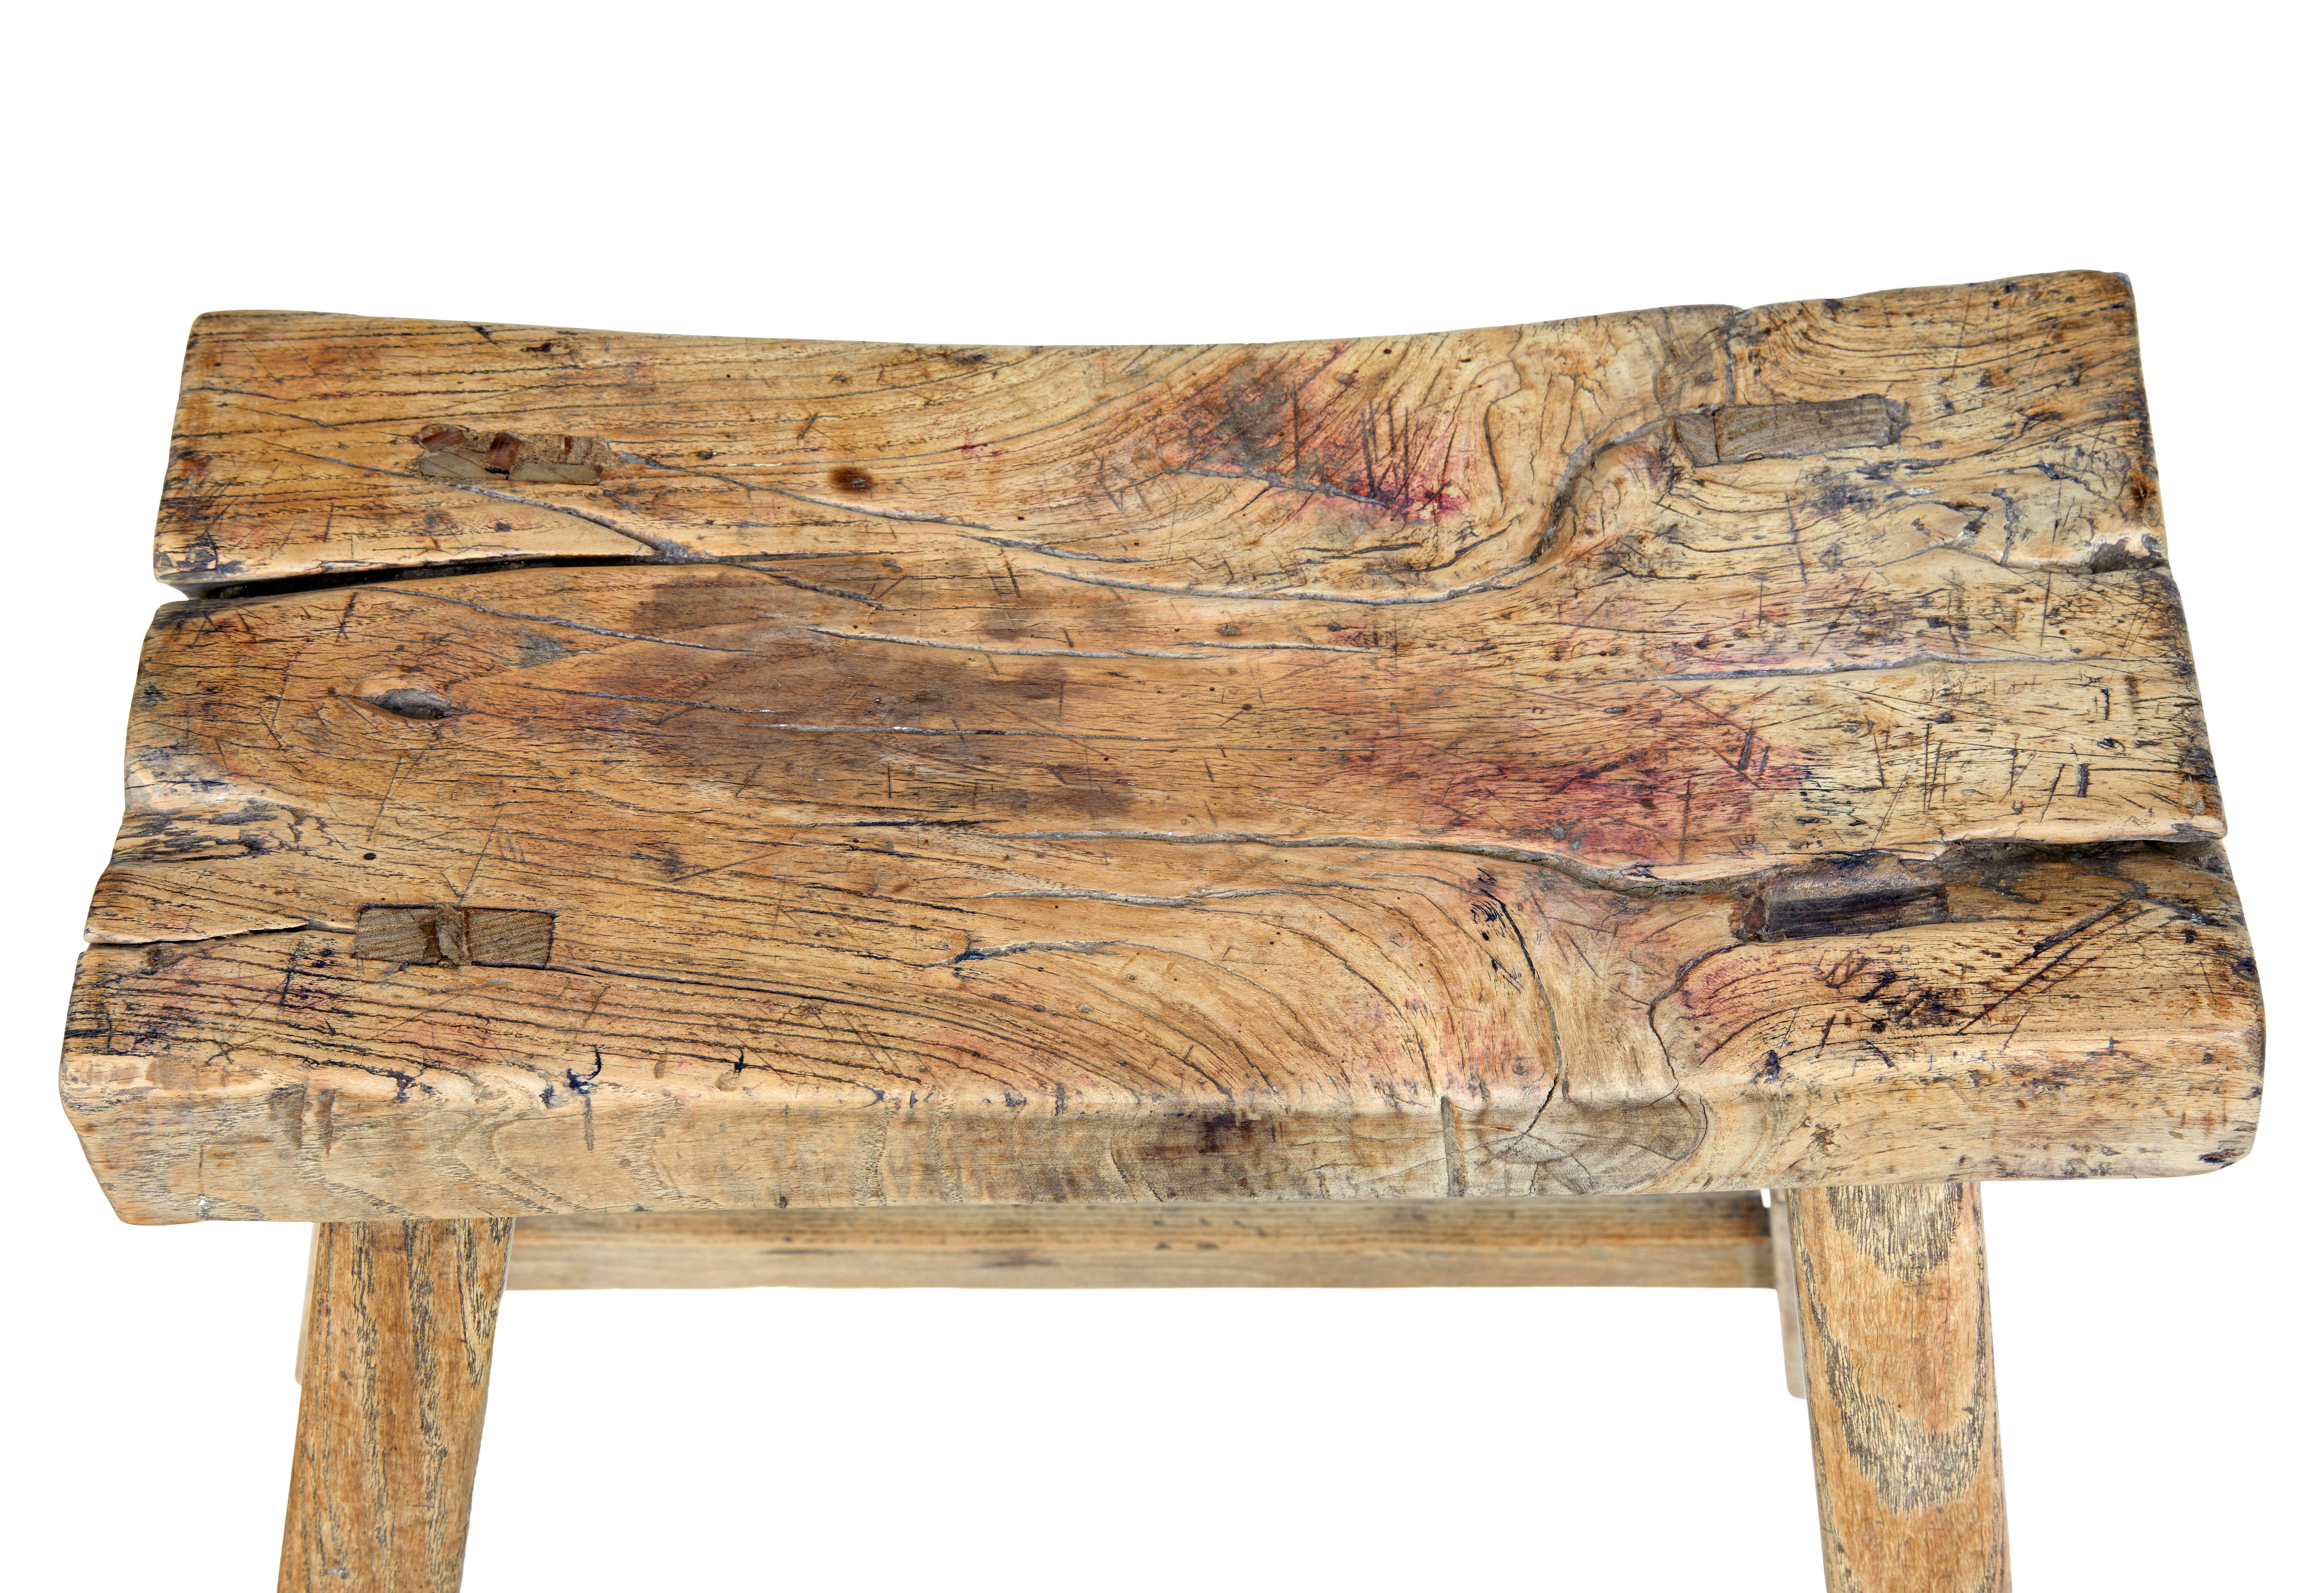 Rustikaler chinesischer Hartholzhocker aus dem 19. Jahrhundert, um 1890.

Geformter Hartholzsitz mit charakteristischem Holz, das Äste und Risse aufweist.  Steht auf 4 Beinen, die durch Streben verbunden sind.

Erwartete Oberflächenspuren und